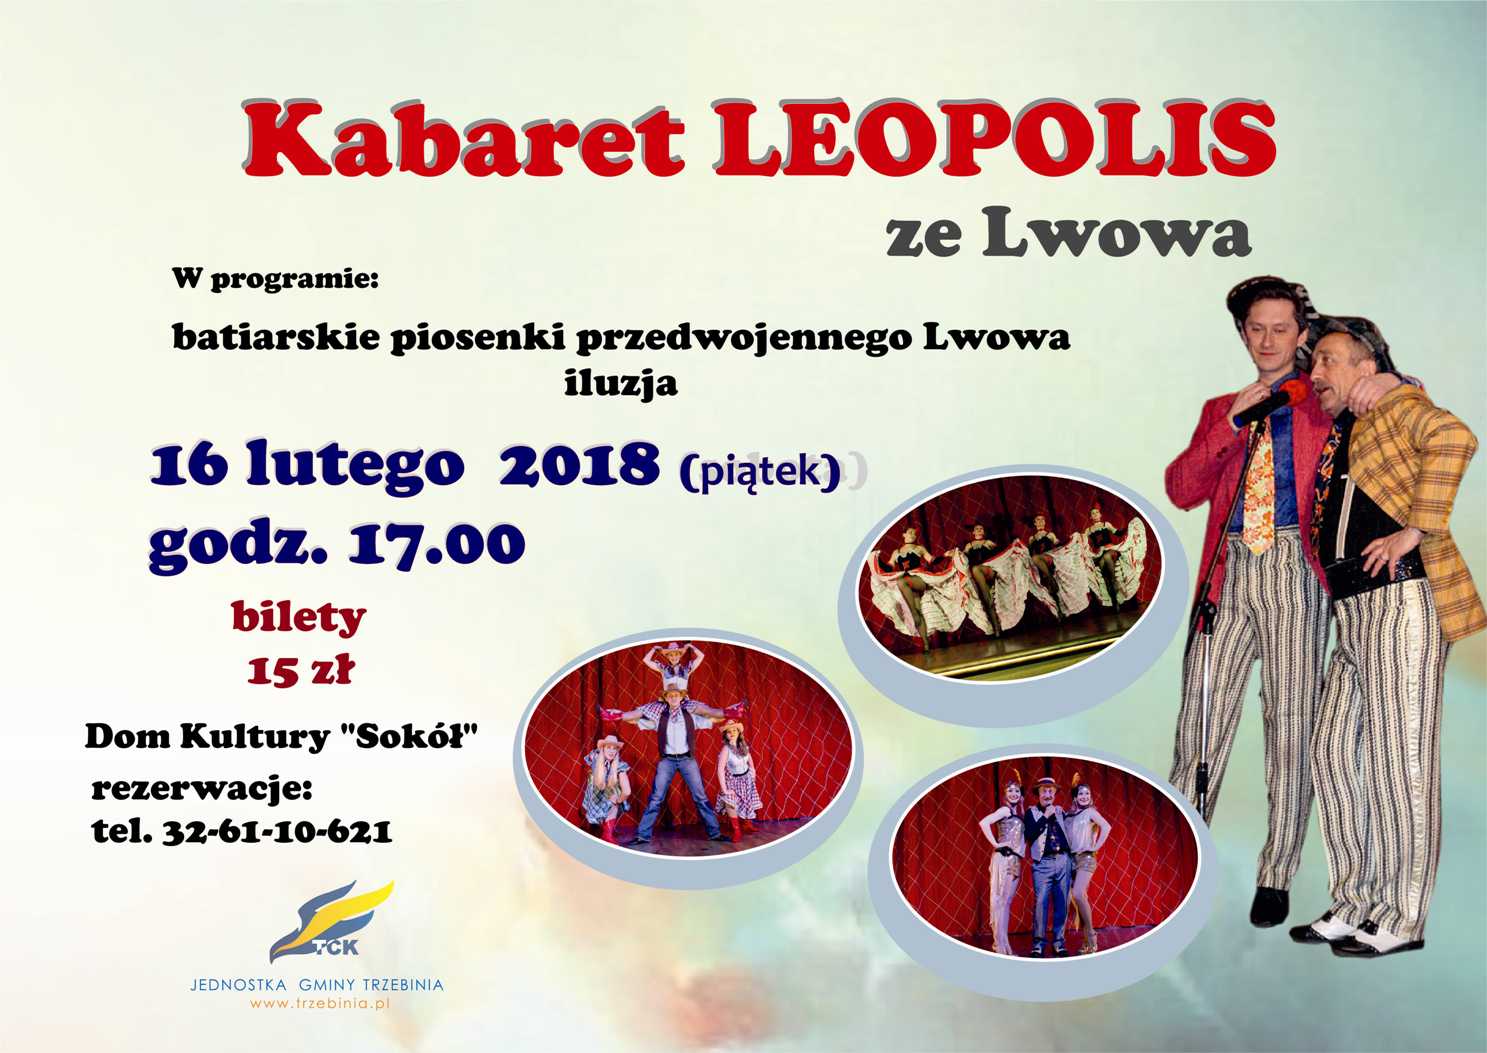 Kabaret LEOPOLIS ze Lwowa